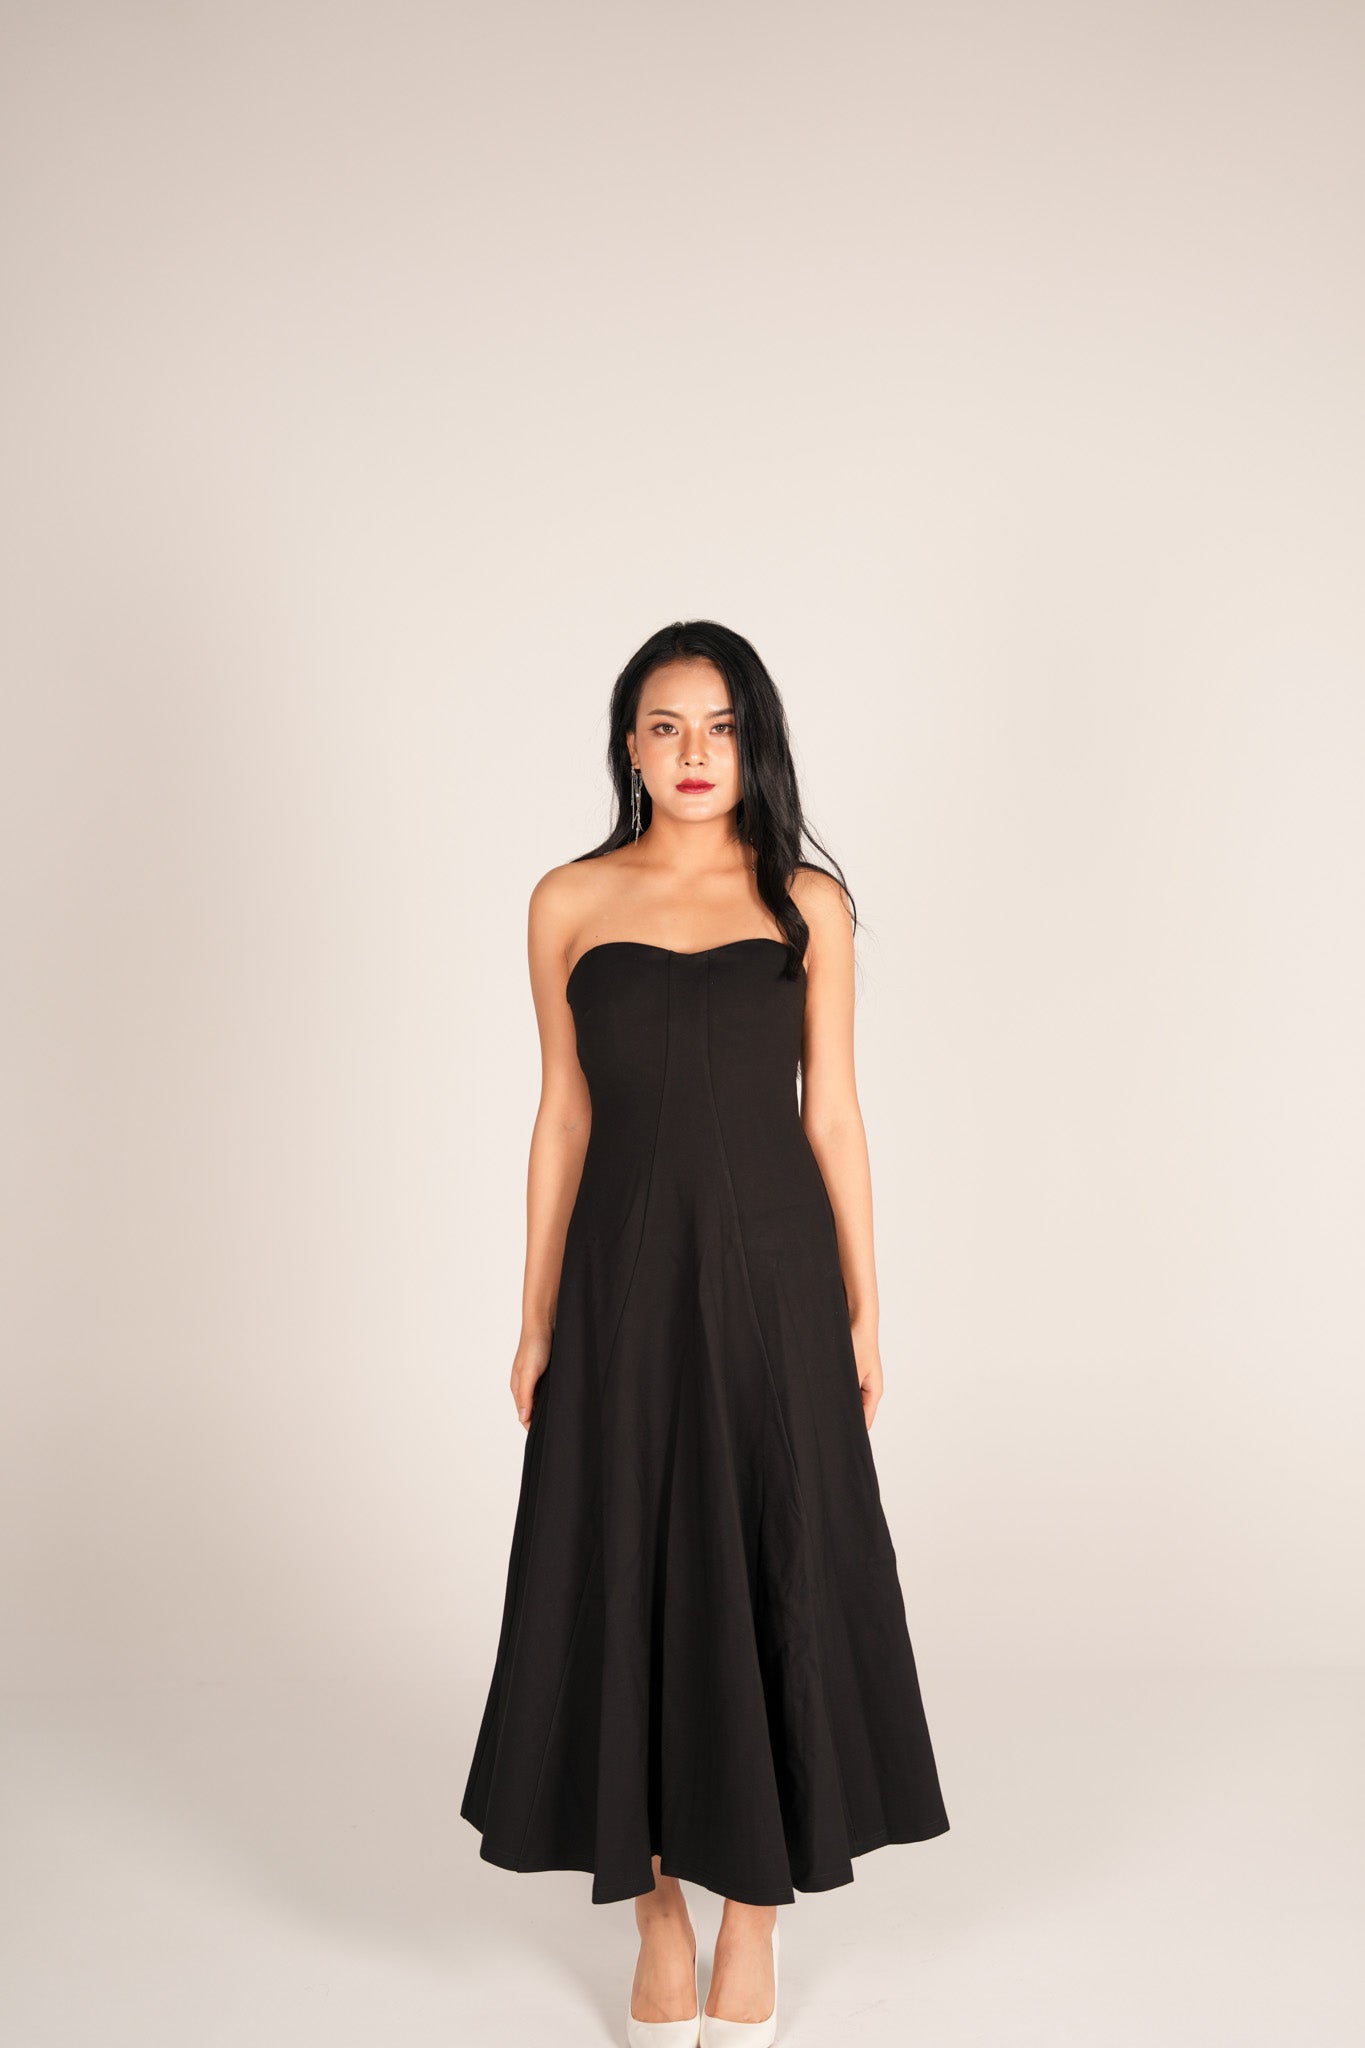 Evelia Bustier Dress in Black